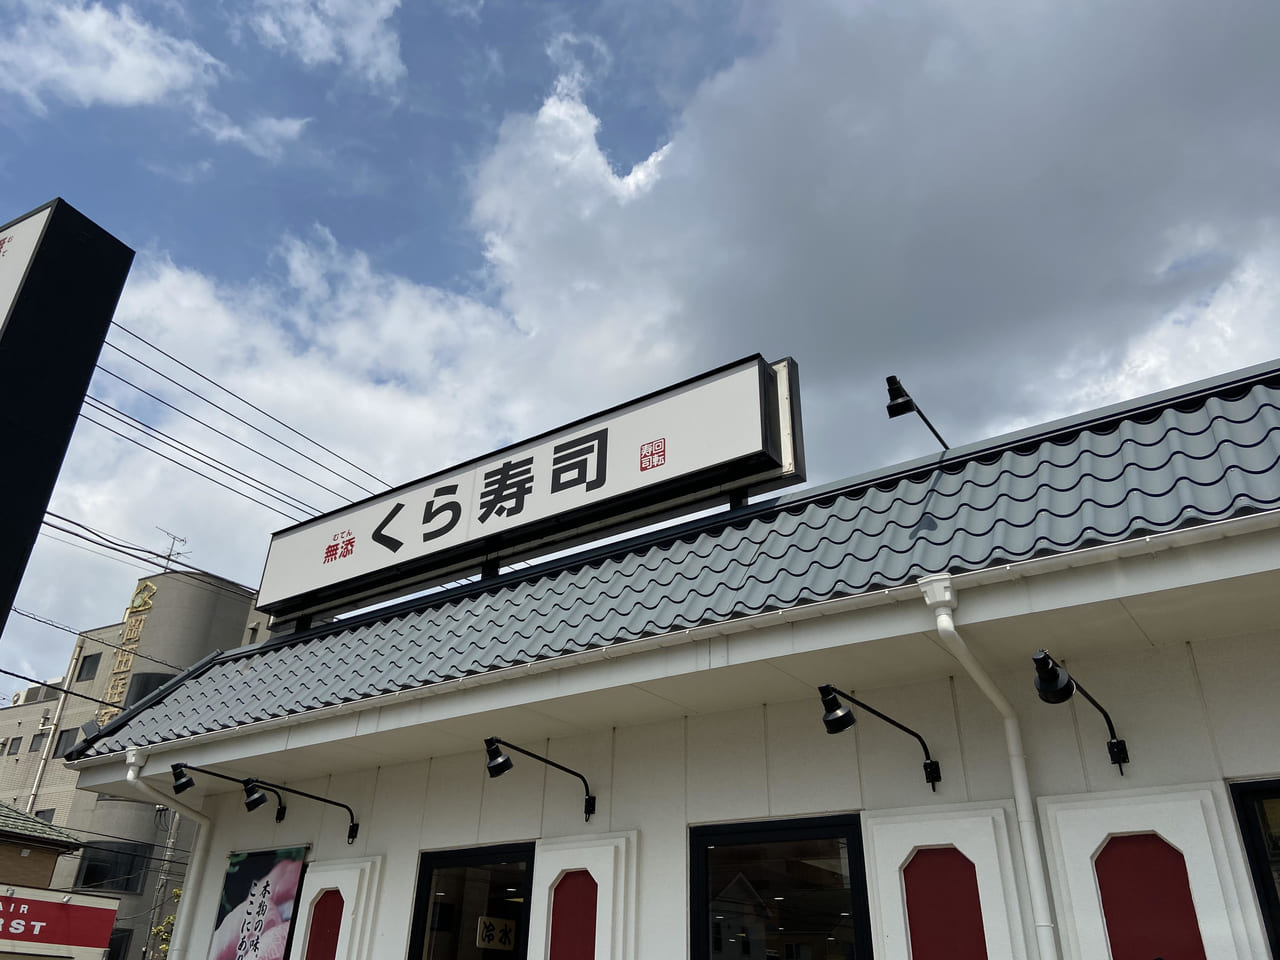 松戸市 Gw期間中は おうちでくら寿司を楽しみませんか お持ち帰り宝くじ開催中 もしかしたら無料に 号外net 松戸市